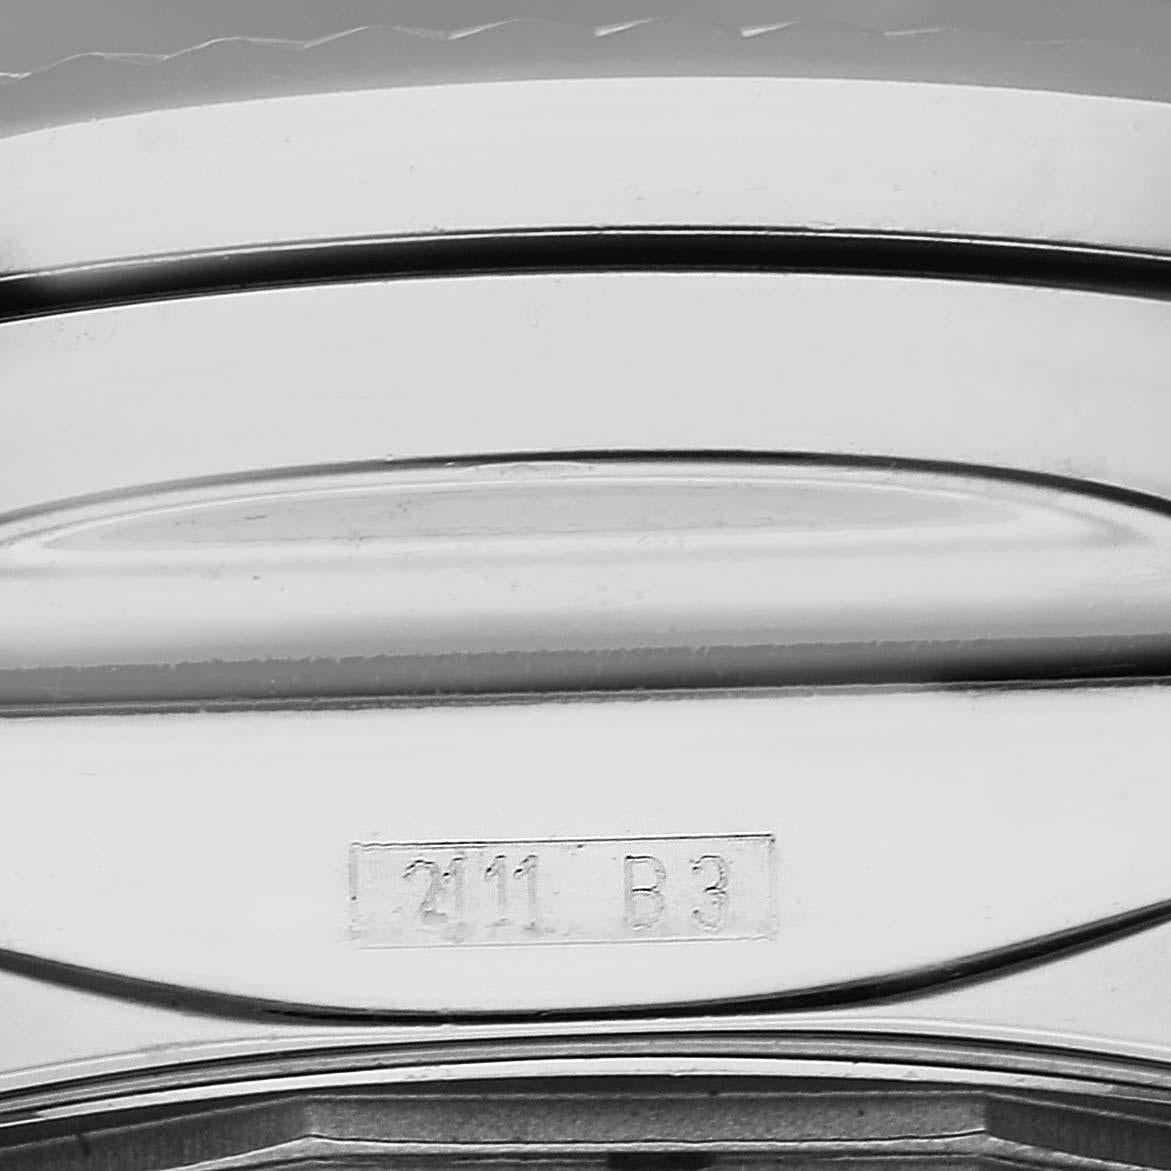 Breitling Bentley Barnato 49mm Stahl Herrenuhr A25368. Automatisches Chronometerwerk mit automatischem Aufzug, offiziell zertifiziert. Chronographen-Funktion. Gehäuse aus Edelstahl mit einem Durchmesser von 49.0 mm. Drücker aus Edelstahl und